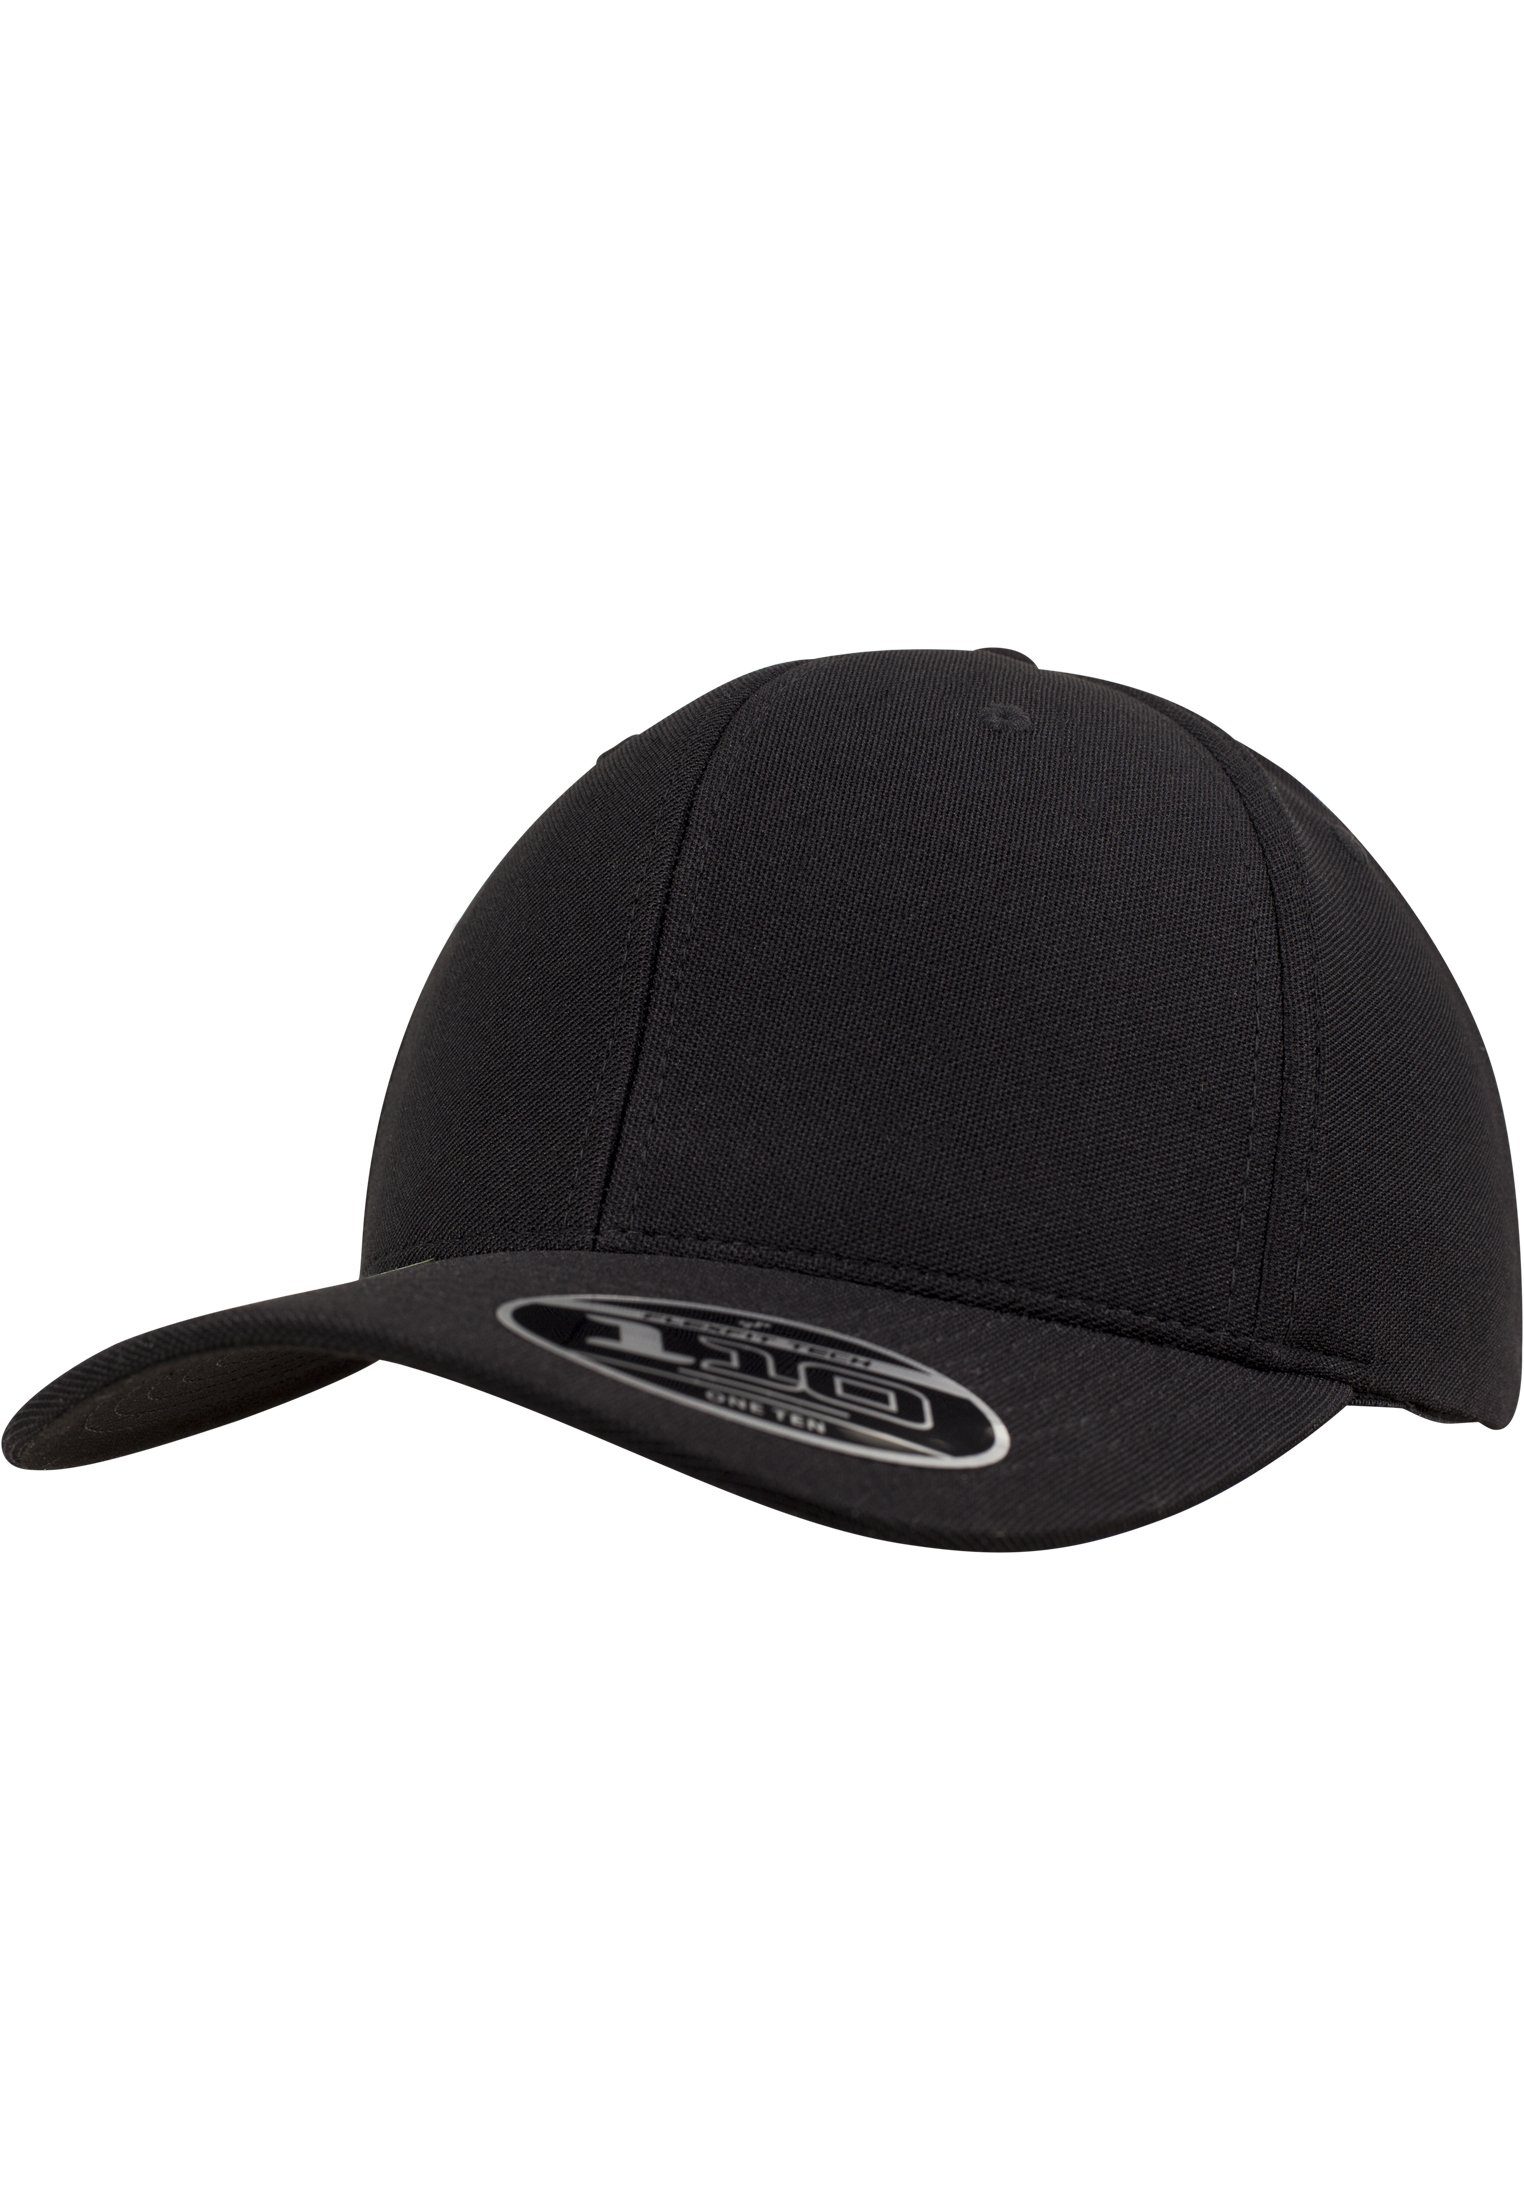 Accessoires Dry Flexfit Mini Cool black Cap & 110 Flex Pique